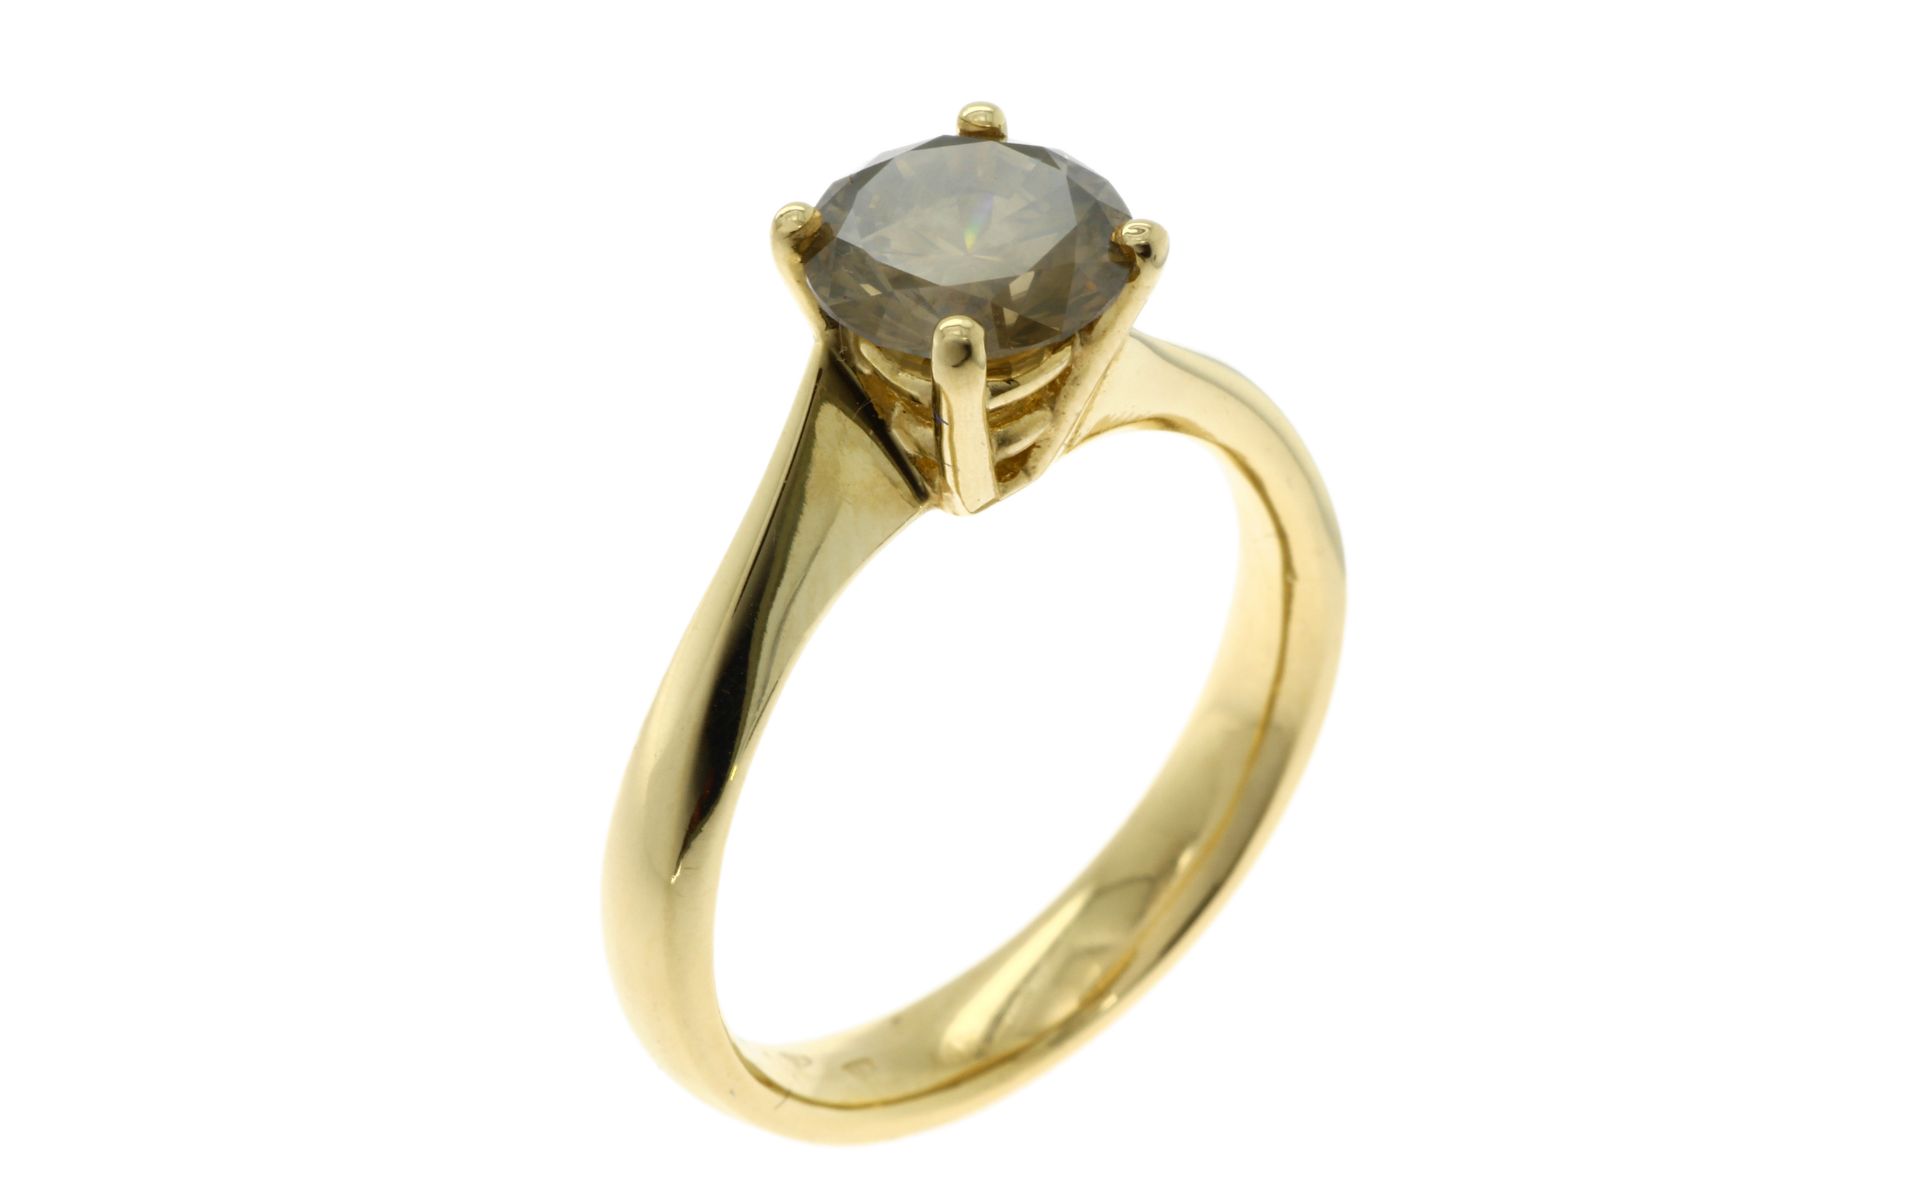 Ring 4.1g 585/- Gelbgold mit Diamant ca. 1.50 ct.. Ringgroesse ca. 54